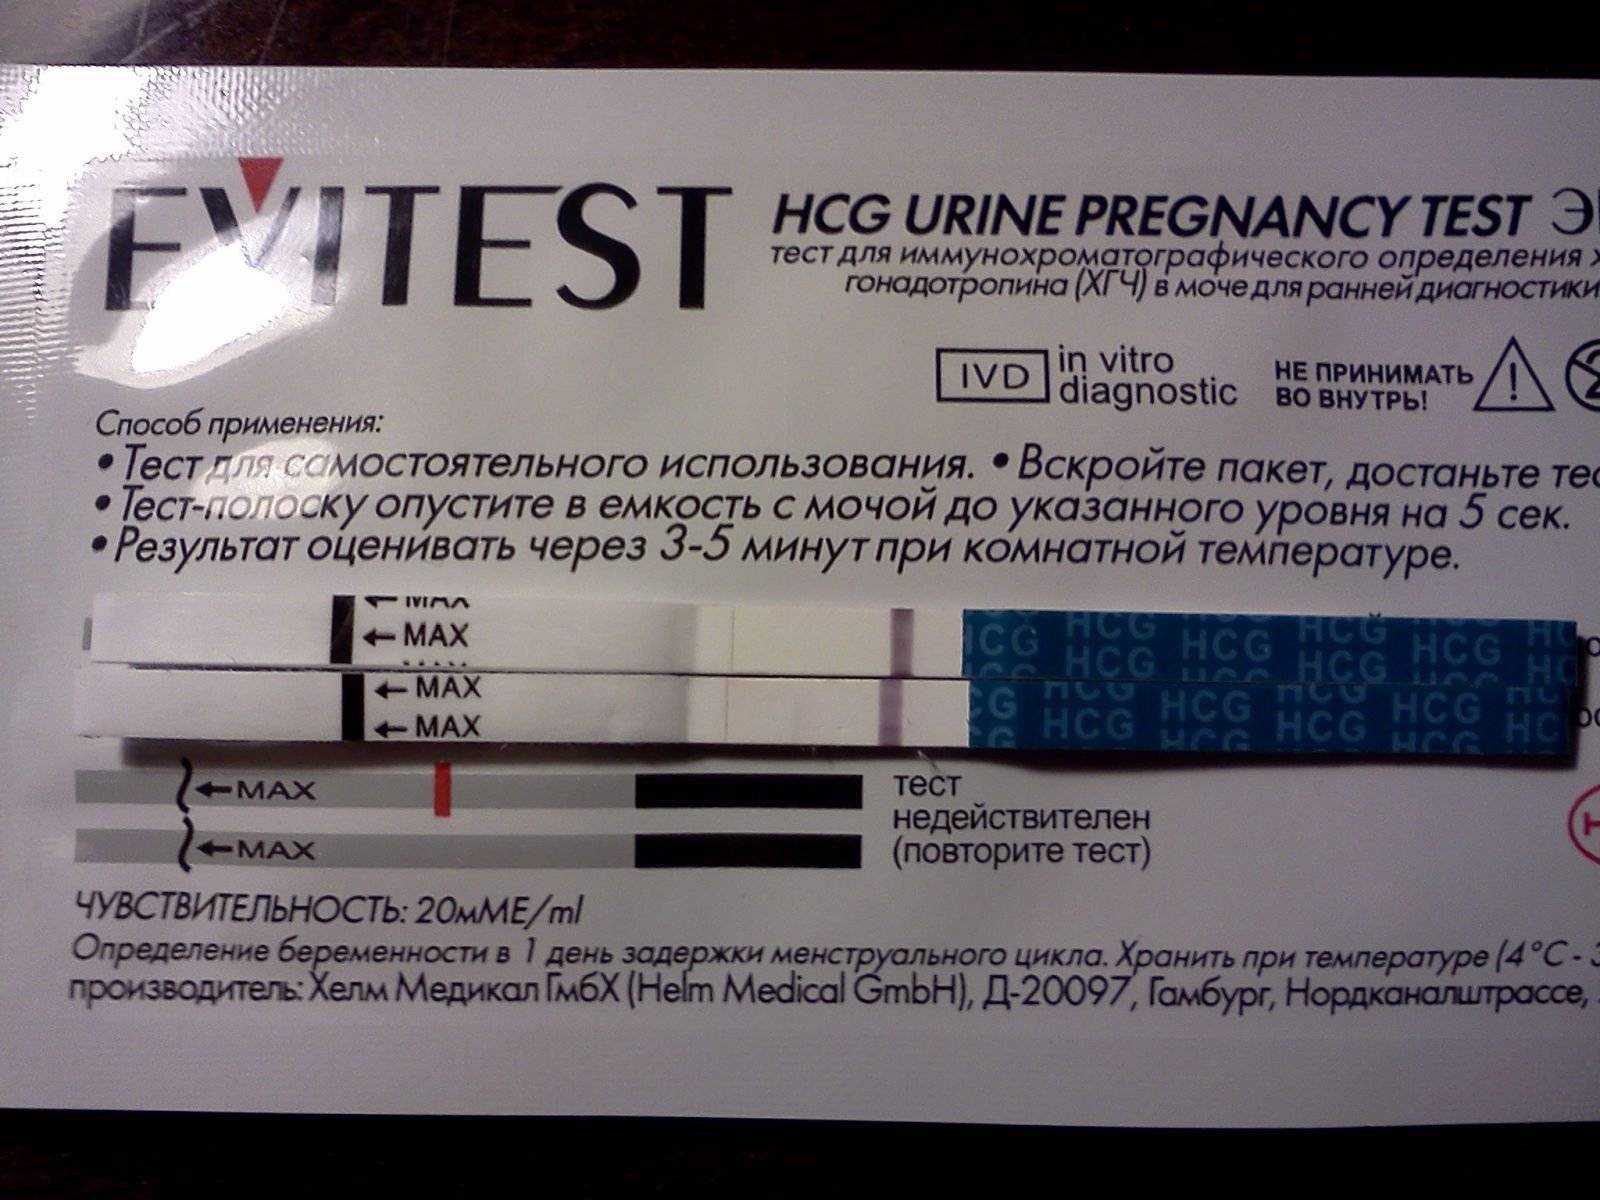 Отрицательный тест на беременность фото evitest как выглядит